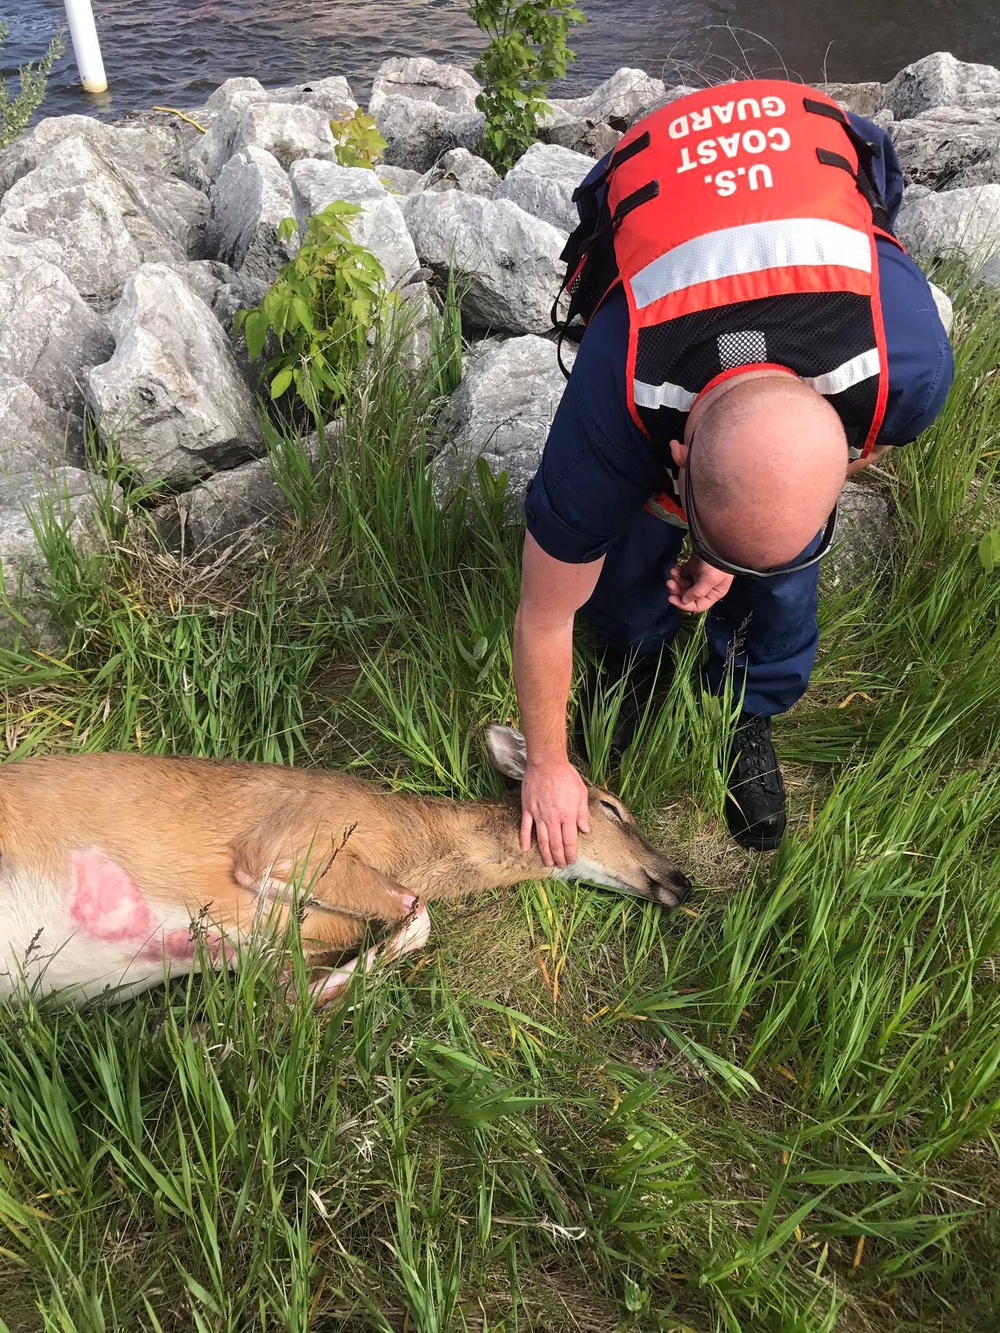 Station Manistee rescues deer